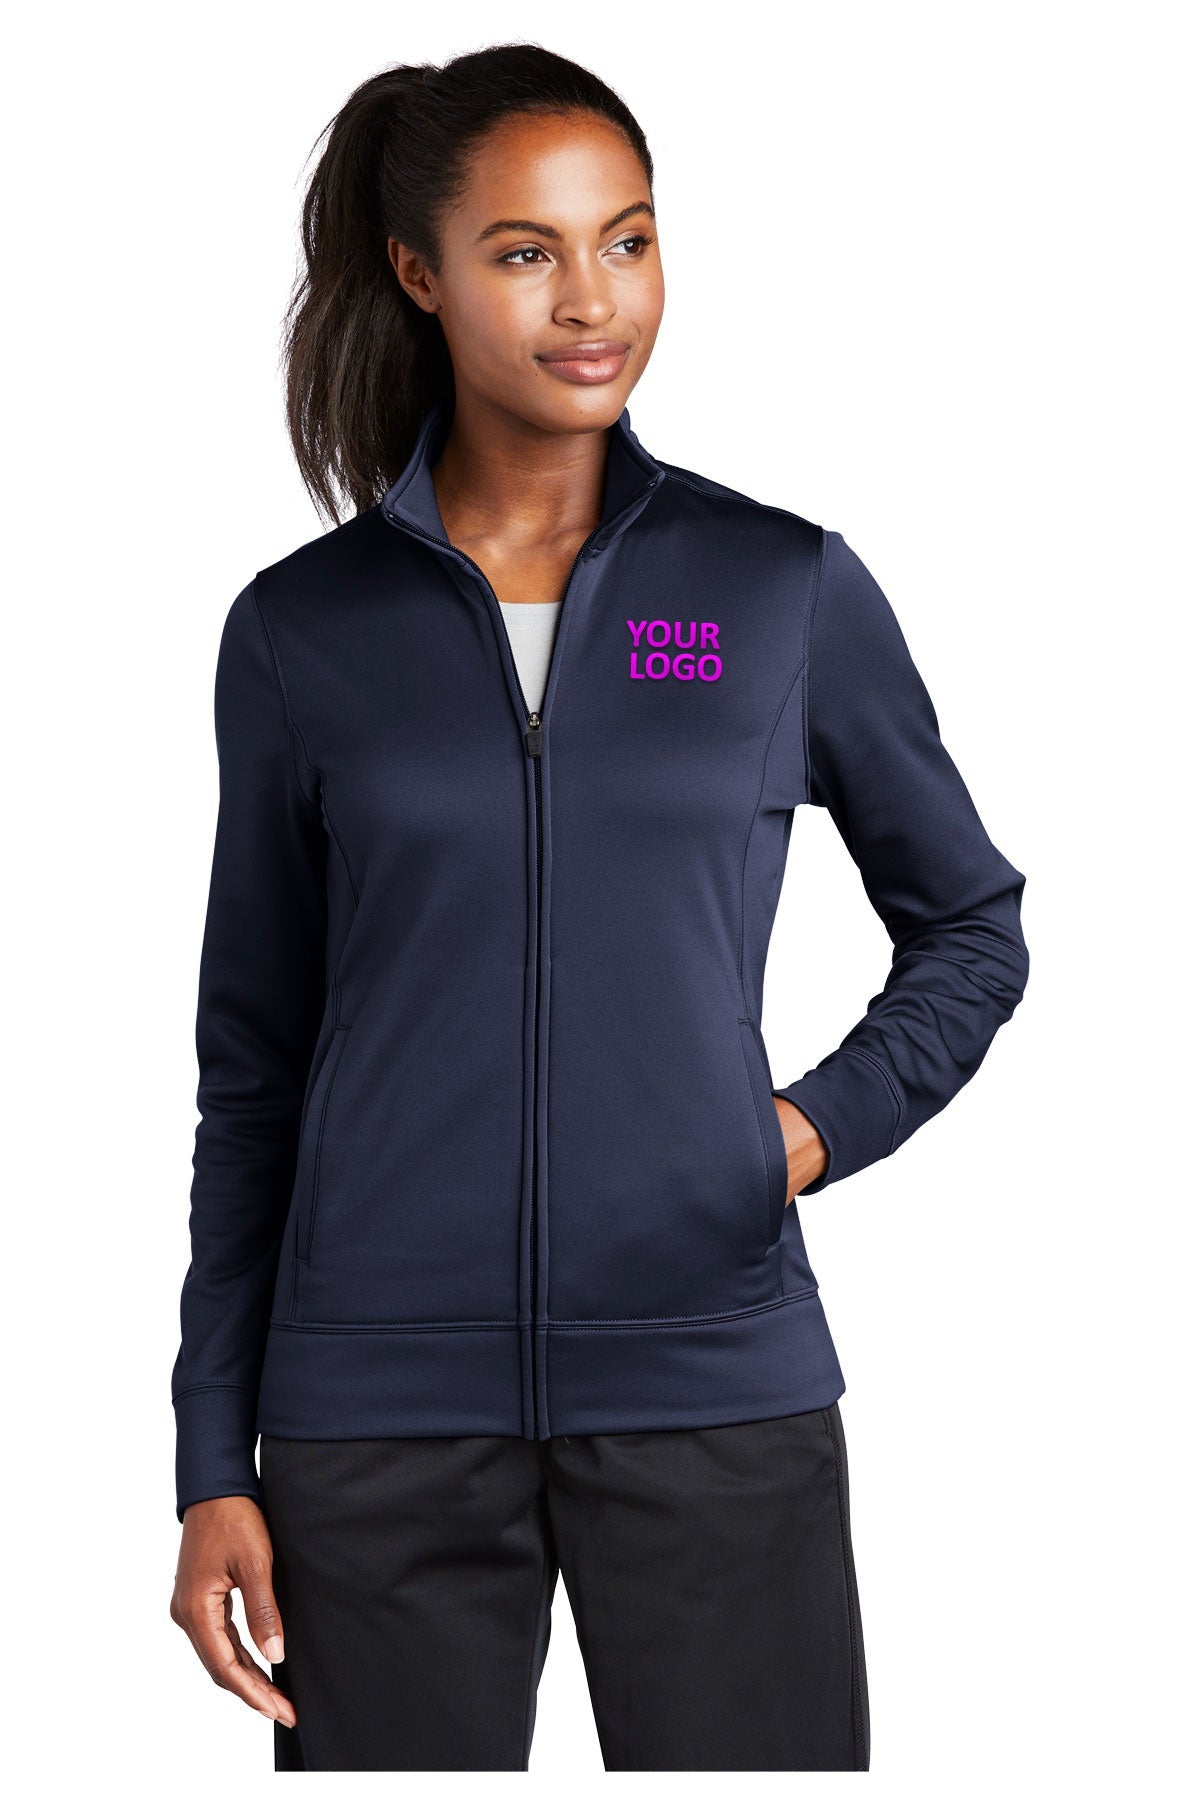 Sport-Tek Ladies Sport-Wick Fleece Branded Full-Zip Jackets, Navy